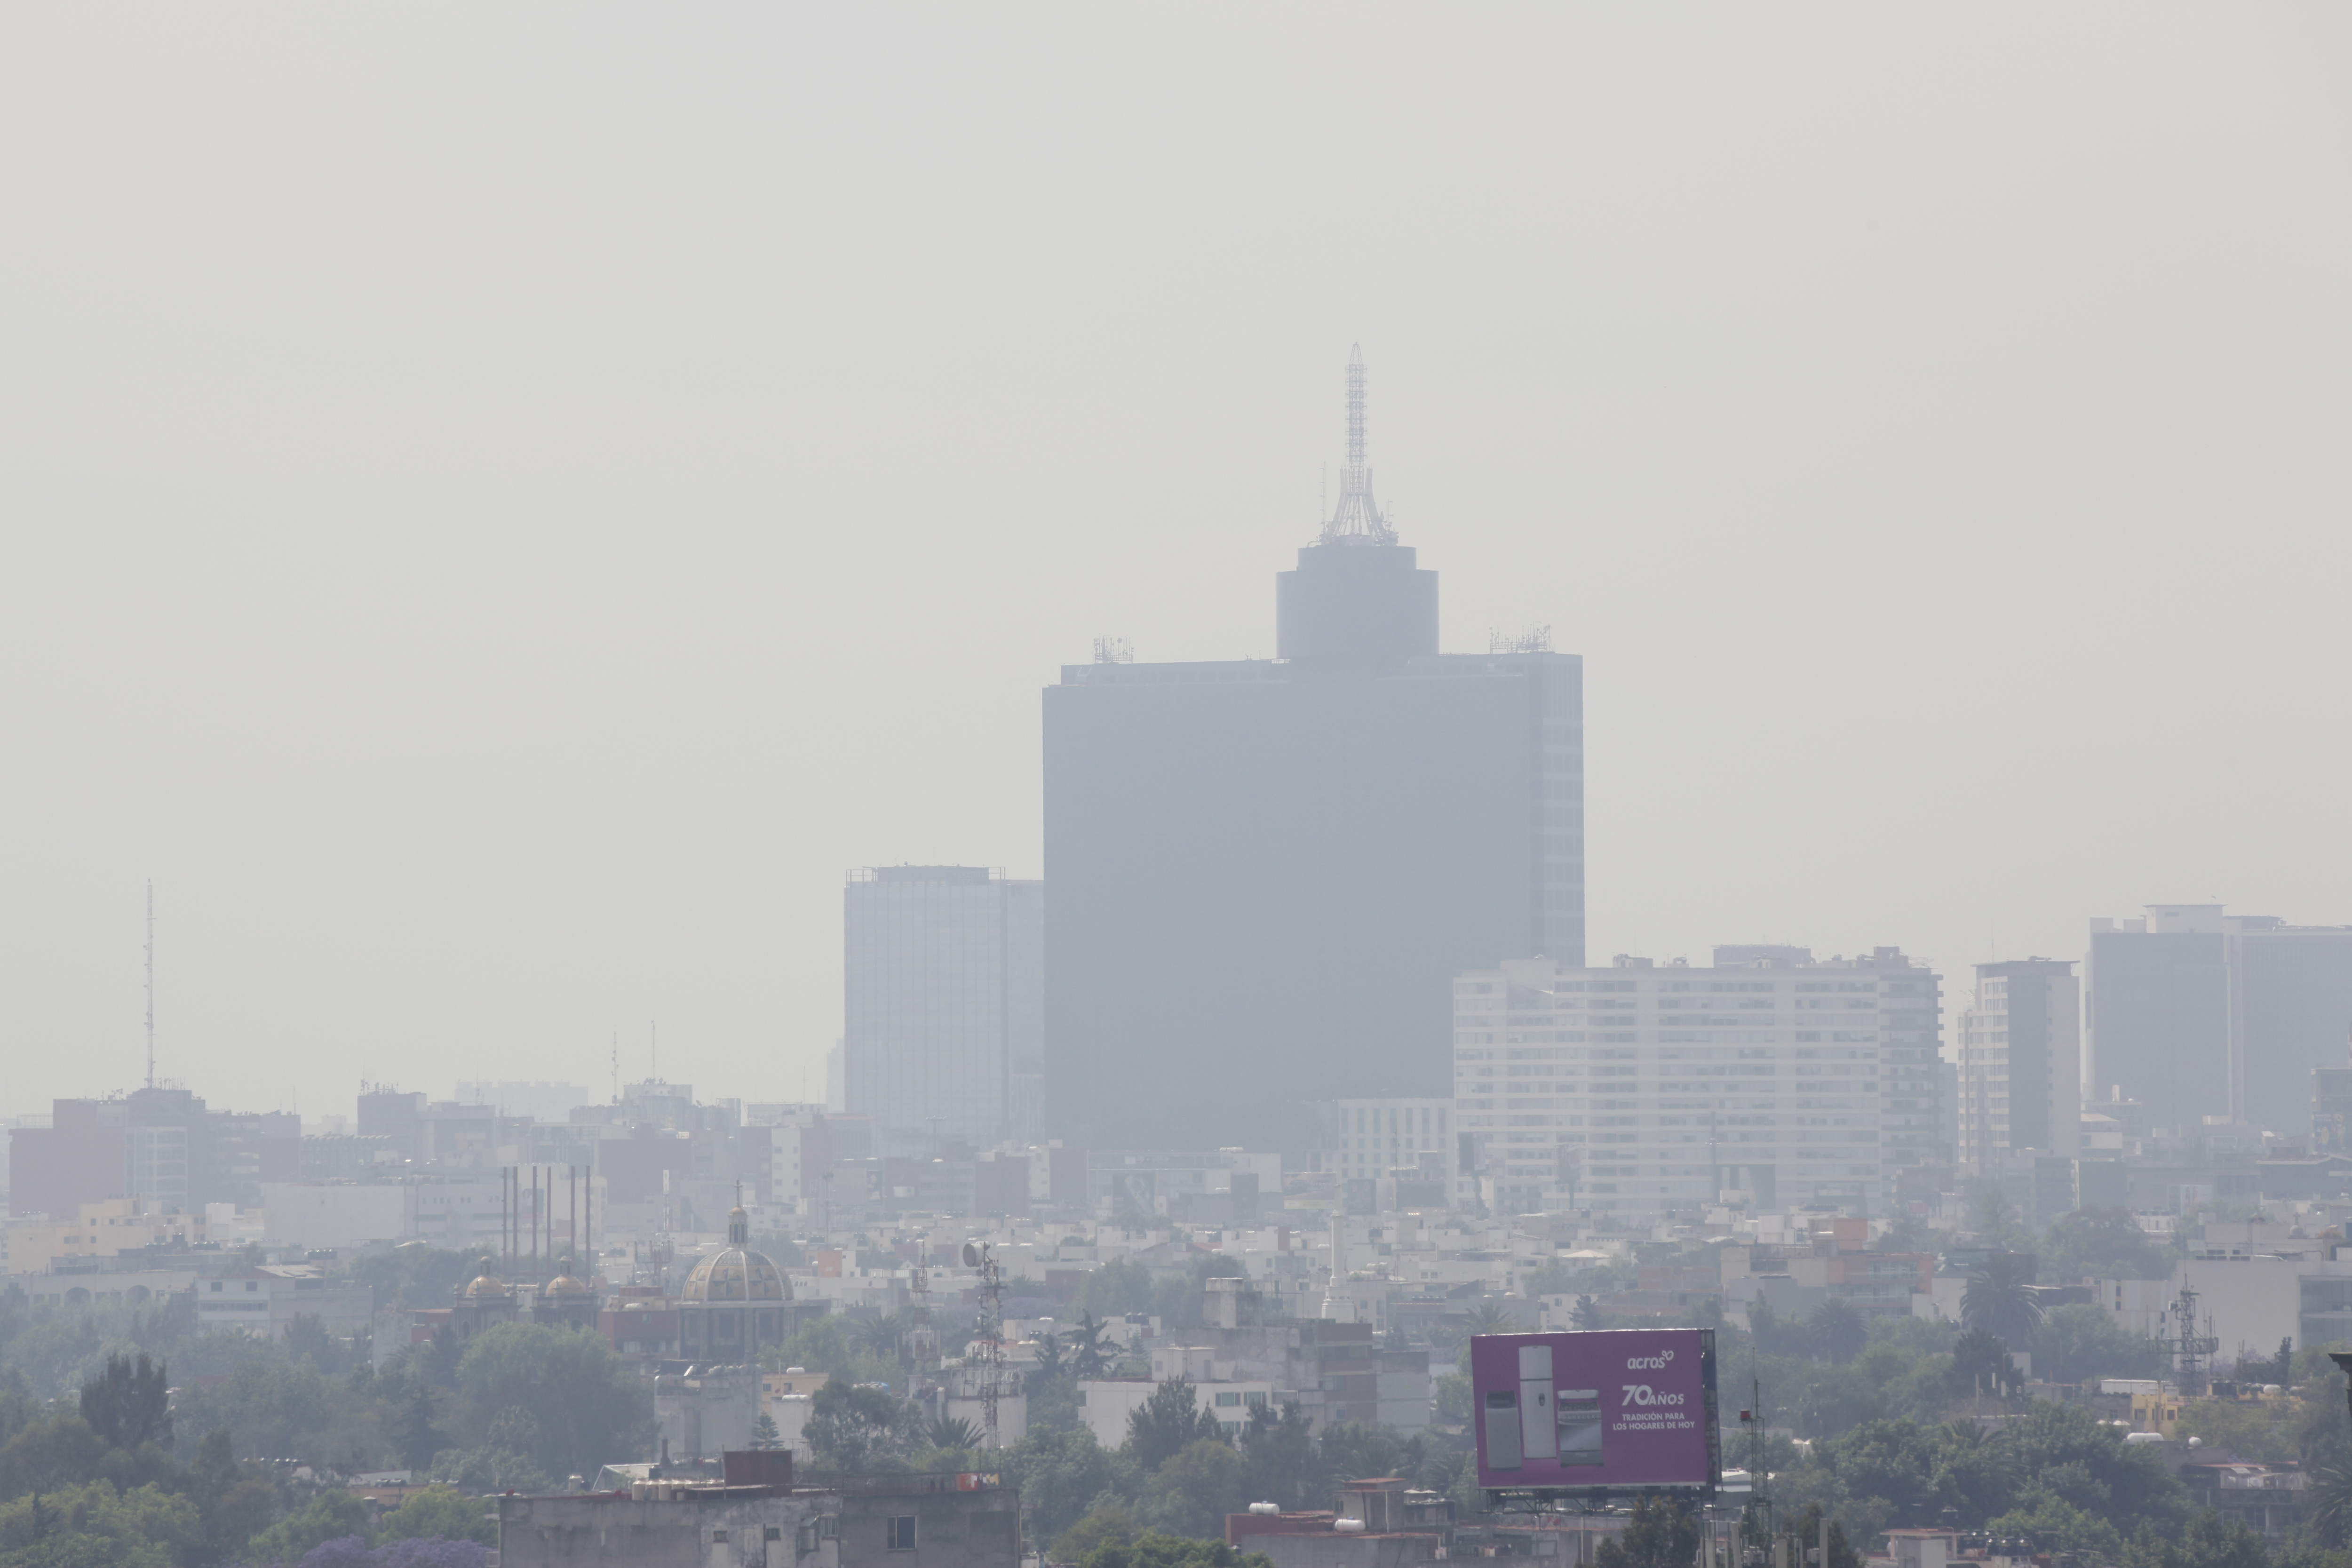 Vista de la contaminación en Ciudad de México. (Foto: EFE/Archivo)
